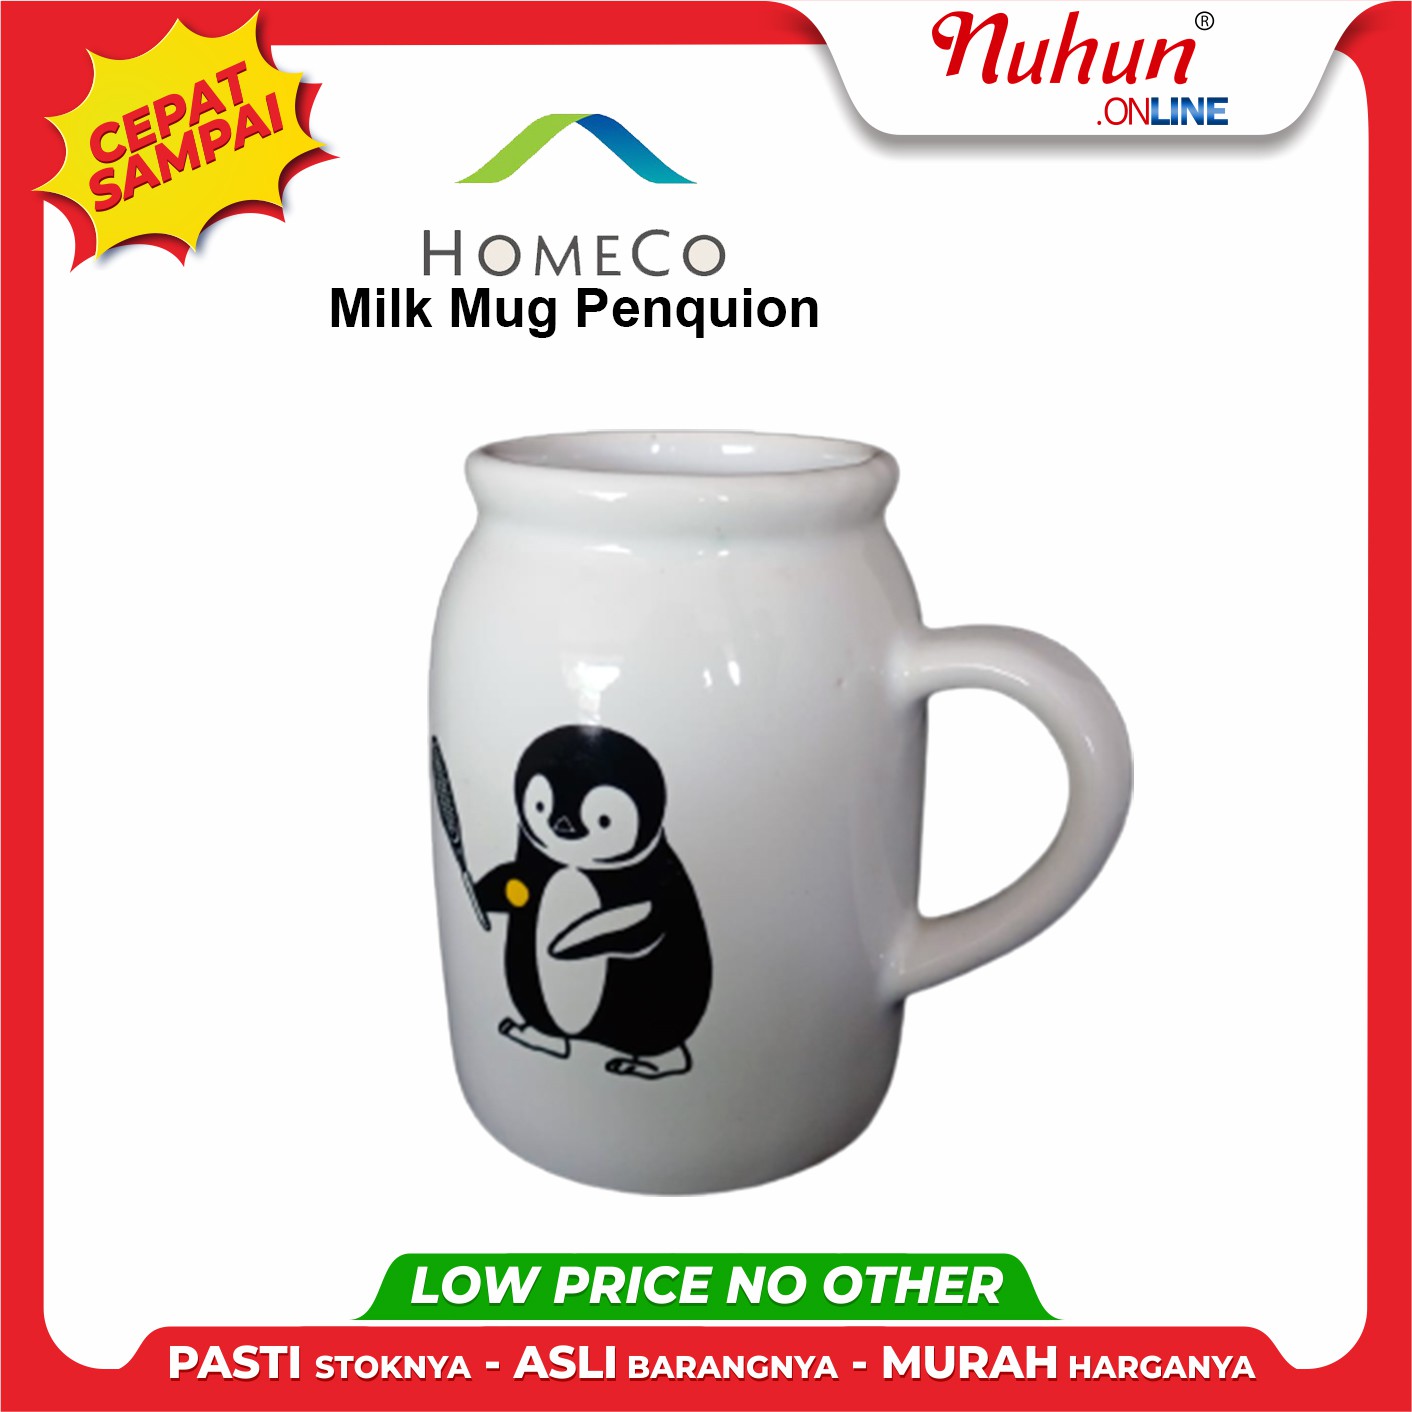 Milk Mug Penquion